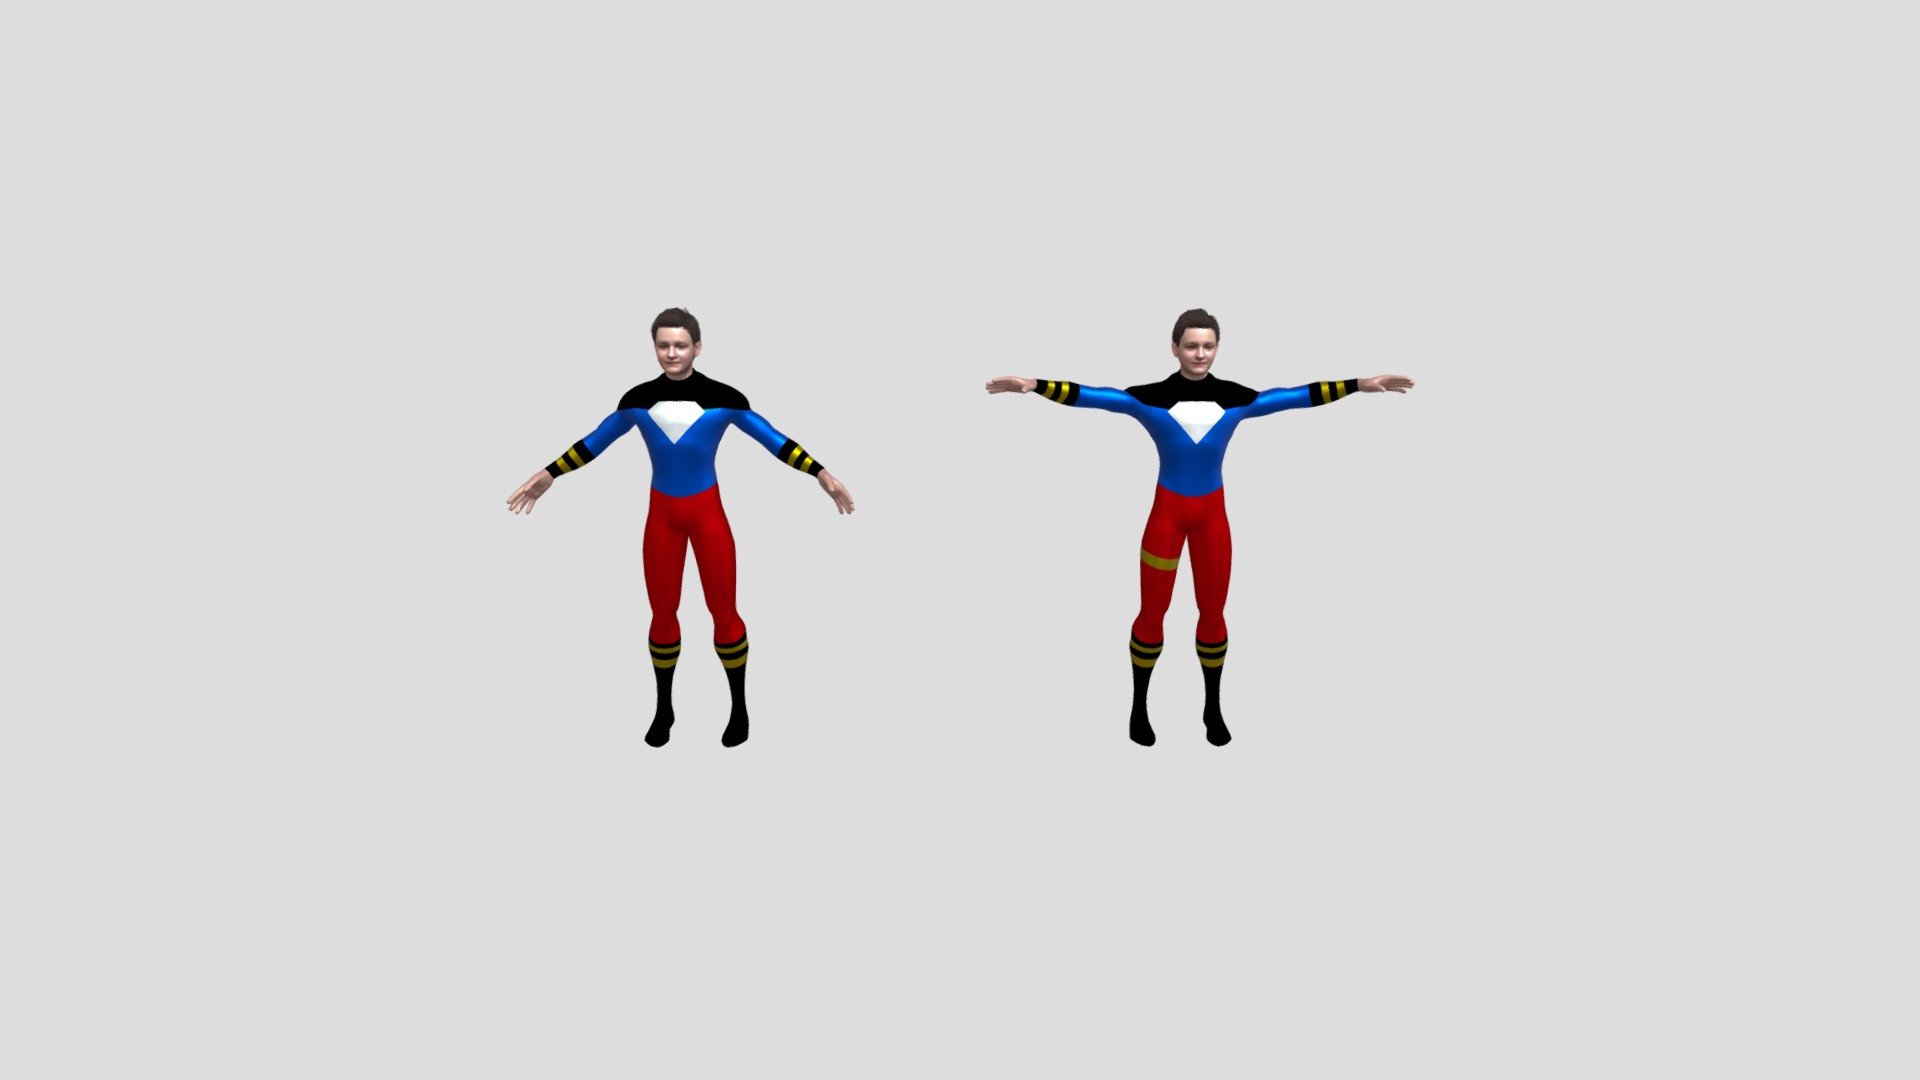 basic superboy model
low poly - Superboy - 3D model by 3ric.4olt 3d model